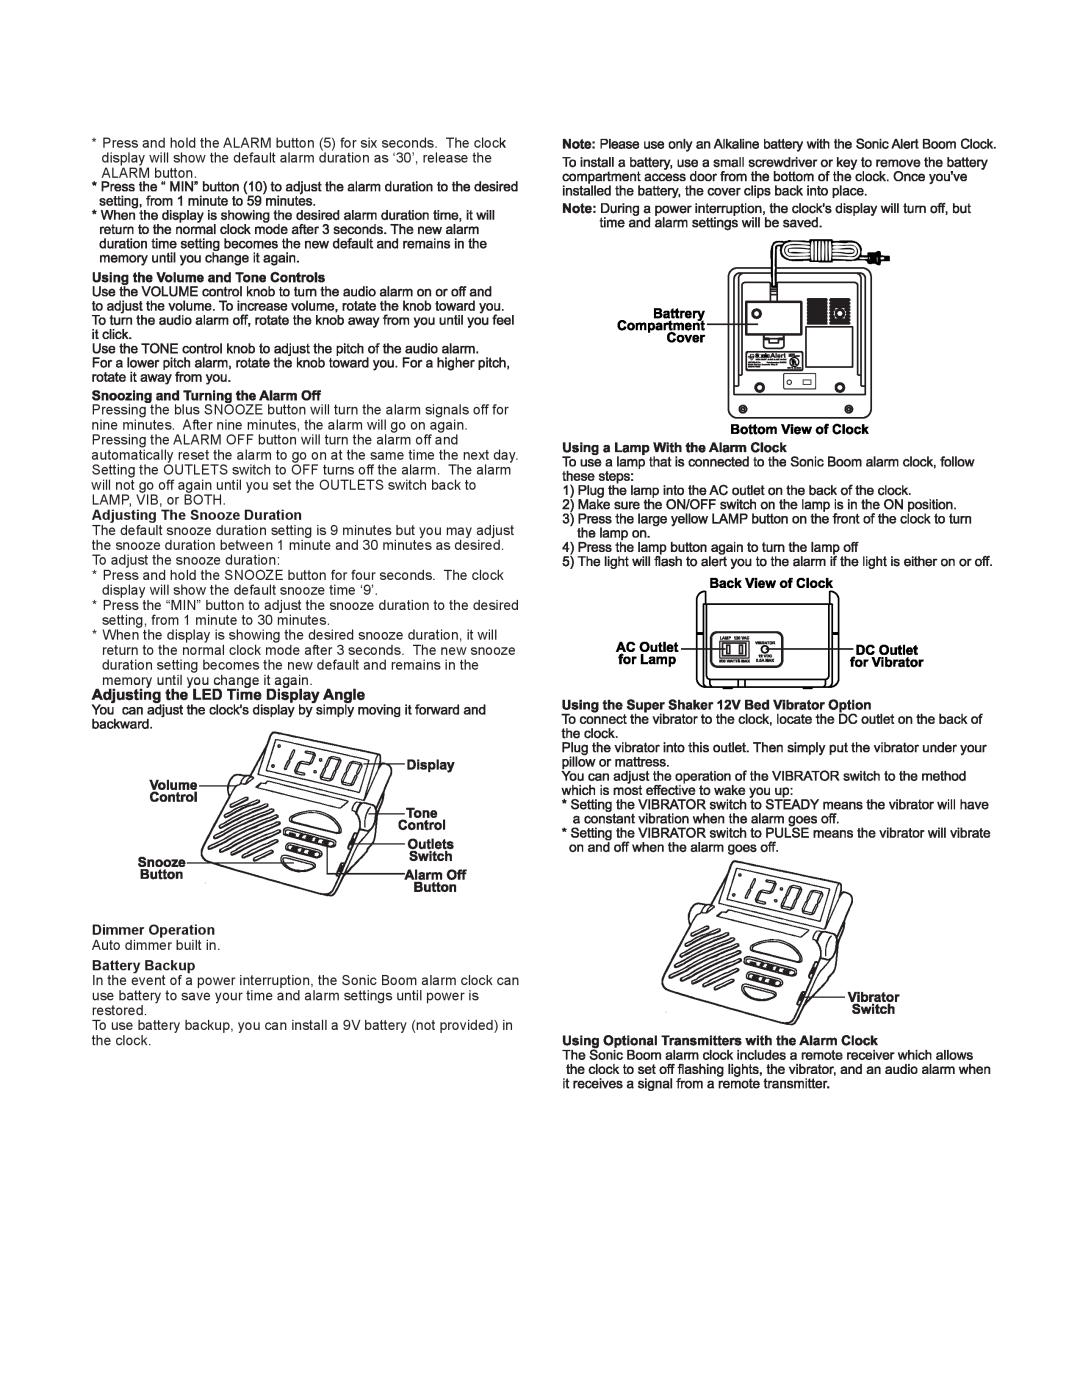 Sonic Alert SB1000-V3 manual Adjusting The Snooze Duration, DimmerOperation, Battery Backup 